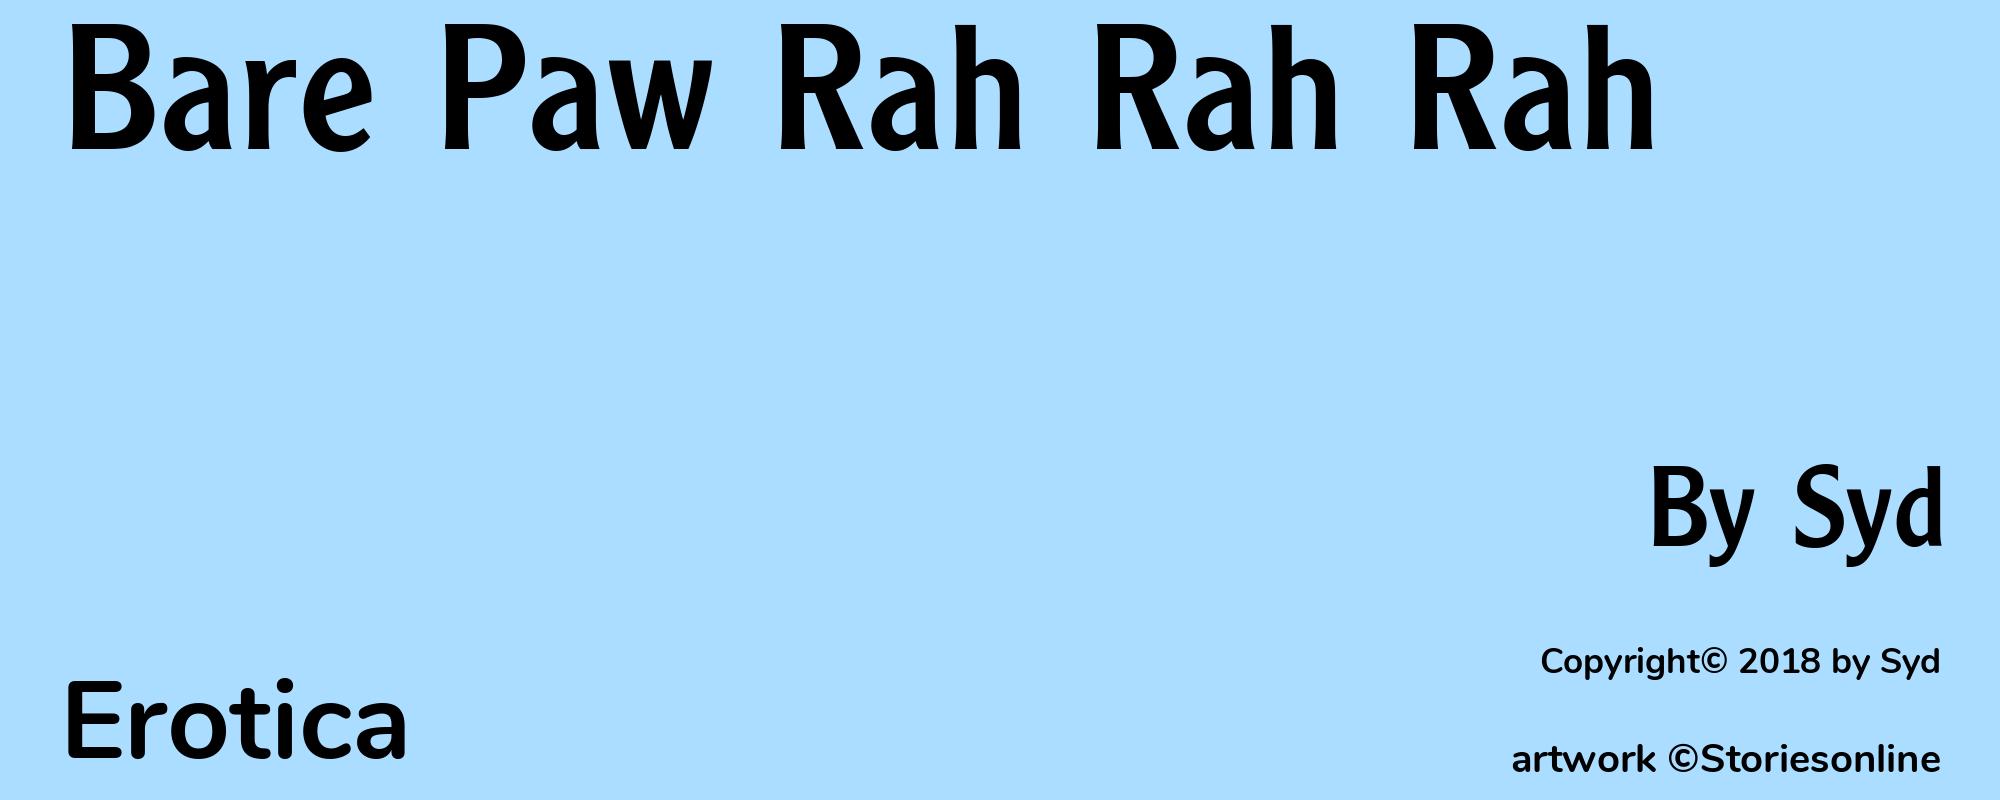 Bare Paw Rah Rah Rah - Cover